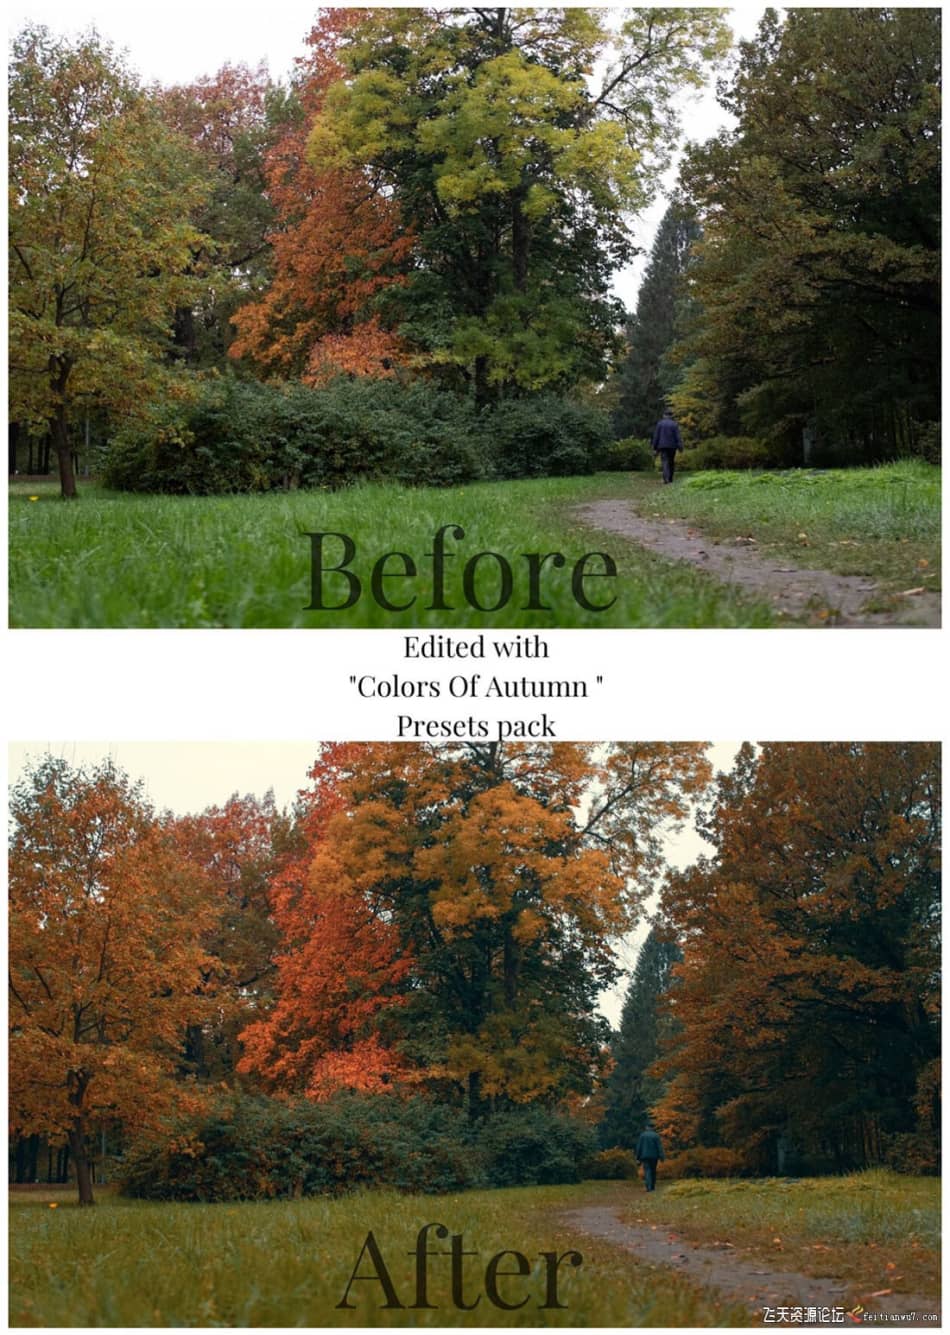 [旅拍LR预设] 街头摄影师 Viktor Balaguer 秋天的色彩Lightroom预设 Colors Of Autumn LR预设 第7张